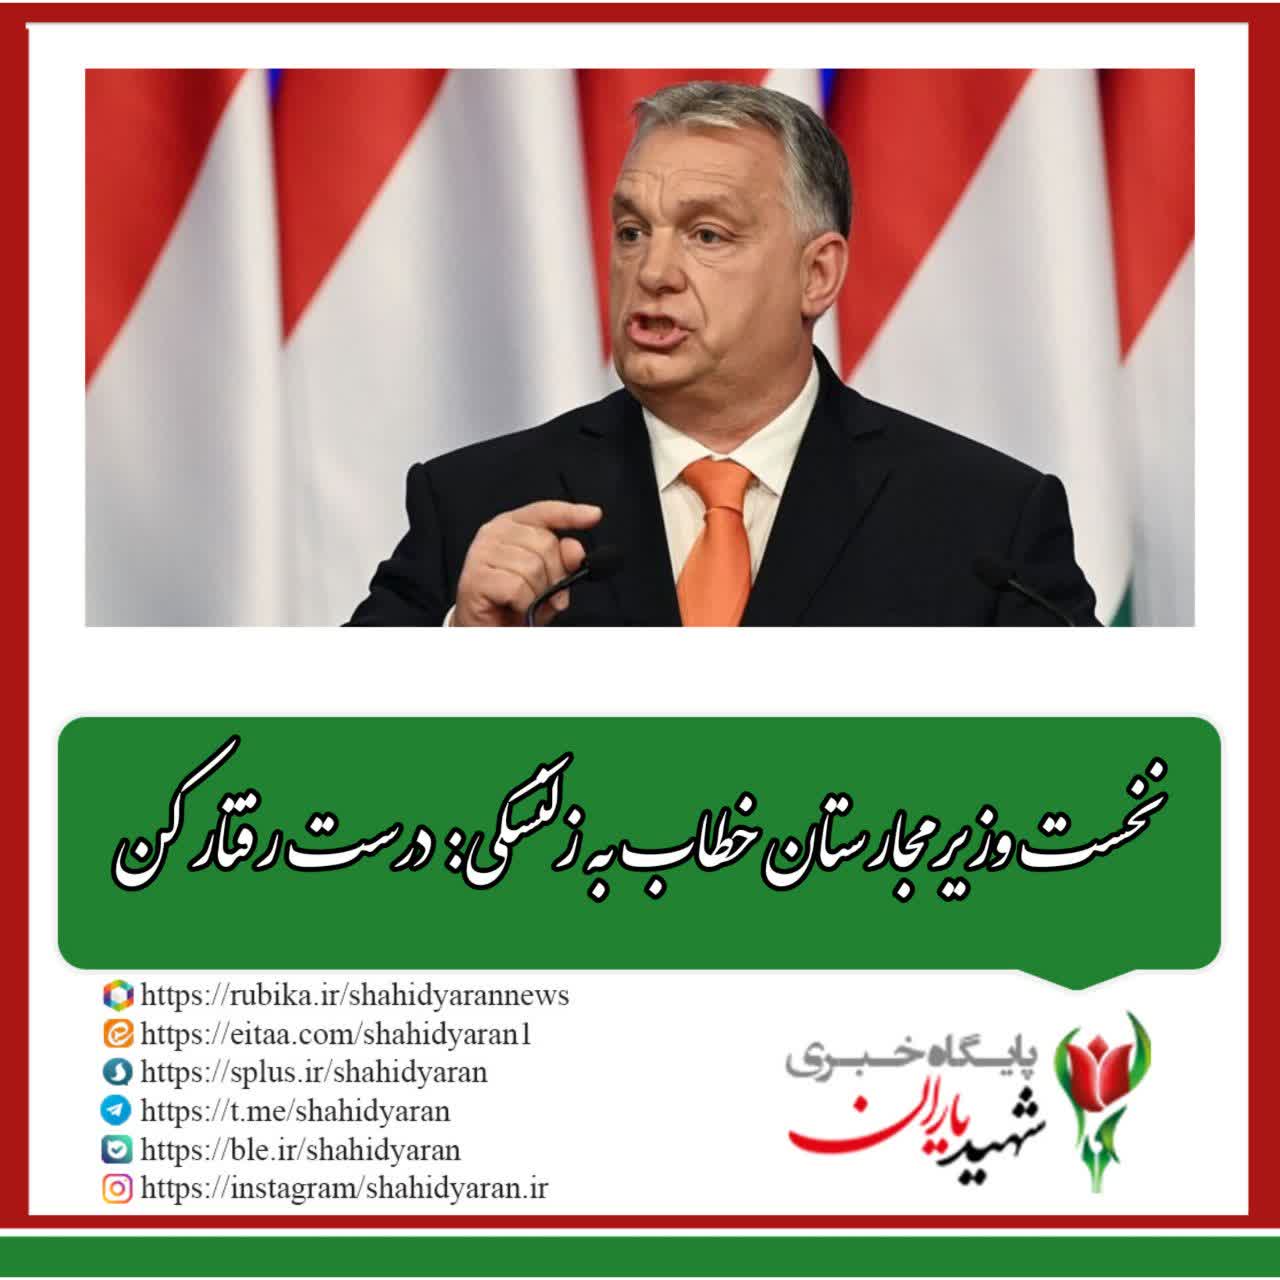 نخست وزیر مجارستان خطاب به زلنسکی: درست رفتار کن